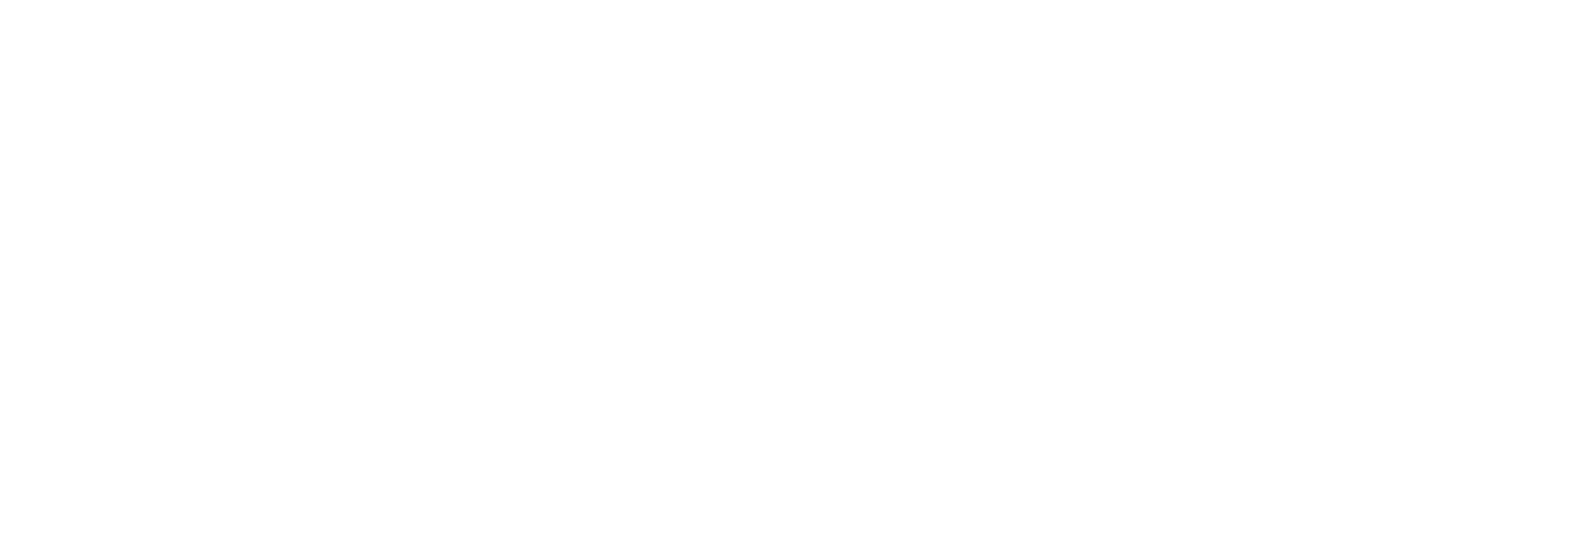 UiPath logo grand pour les fonds sombres (PNG transparent)